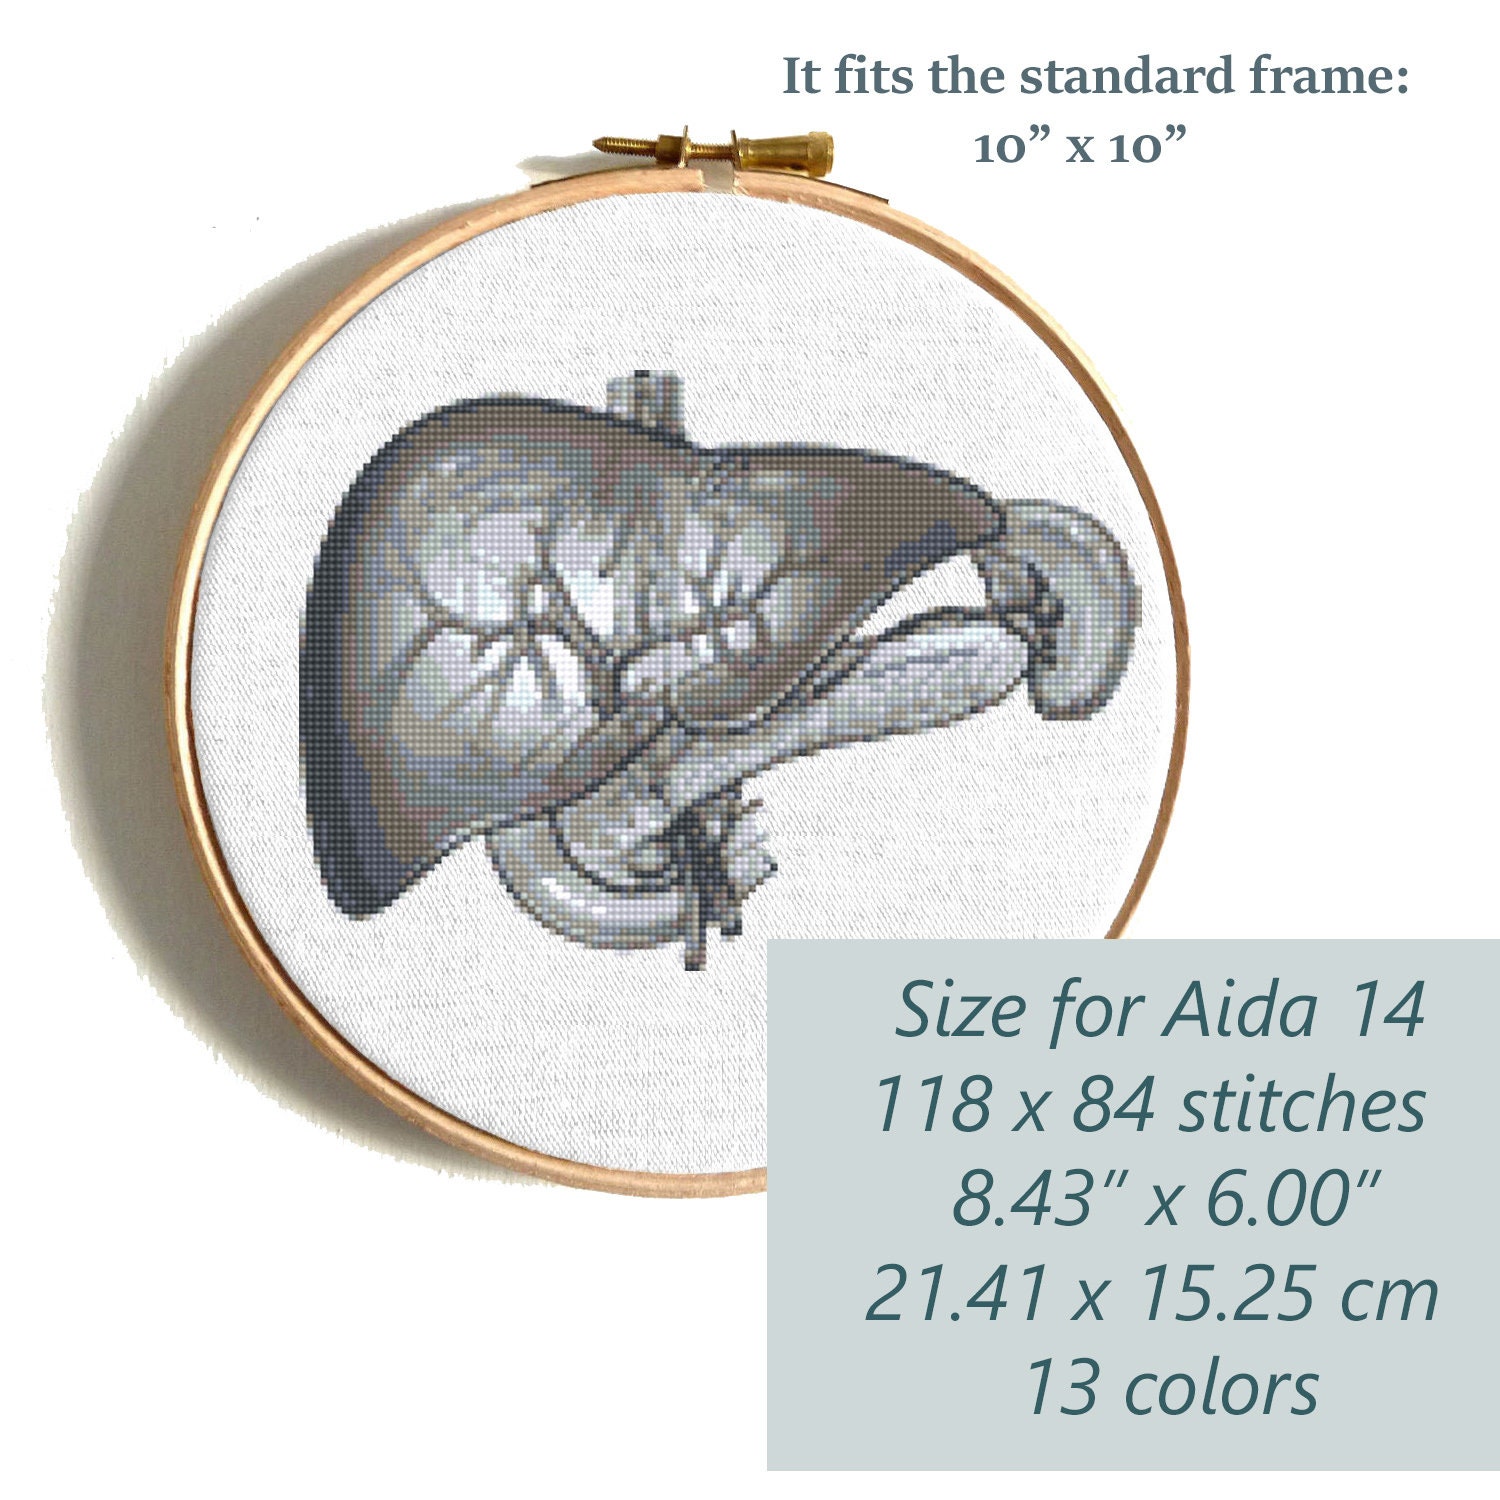 Hígado de cuerpo humano K1085 Kit de punto de cruz contado # 3. hilos,  agujas, tela, aro de bordado y patrón de color impreso en el interior